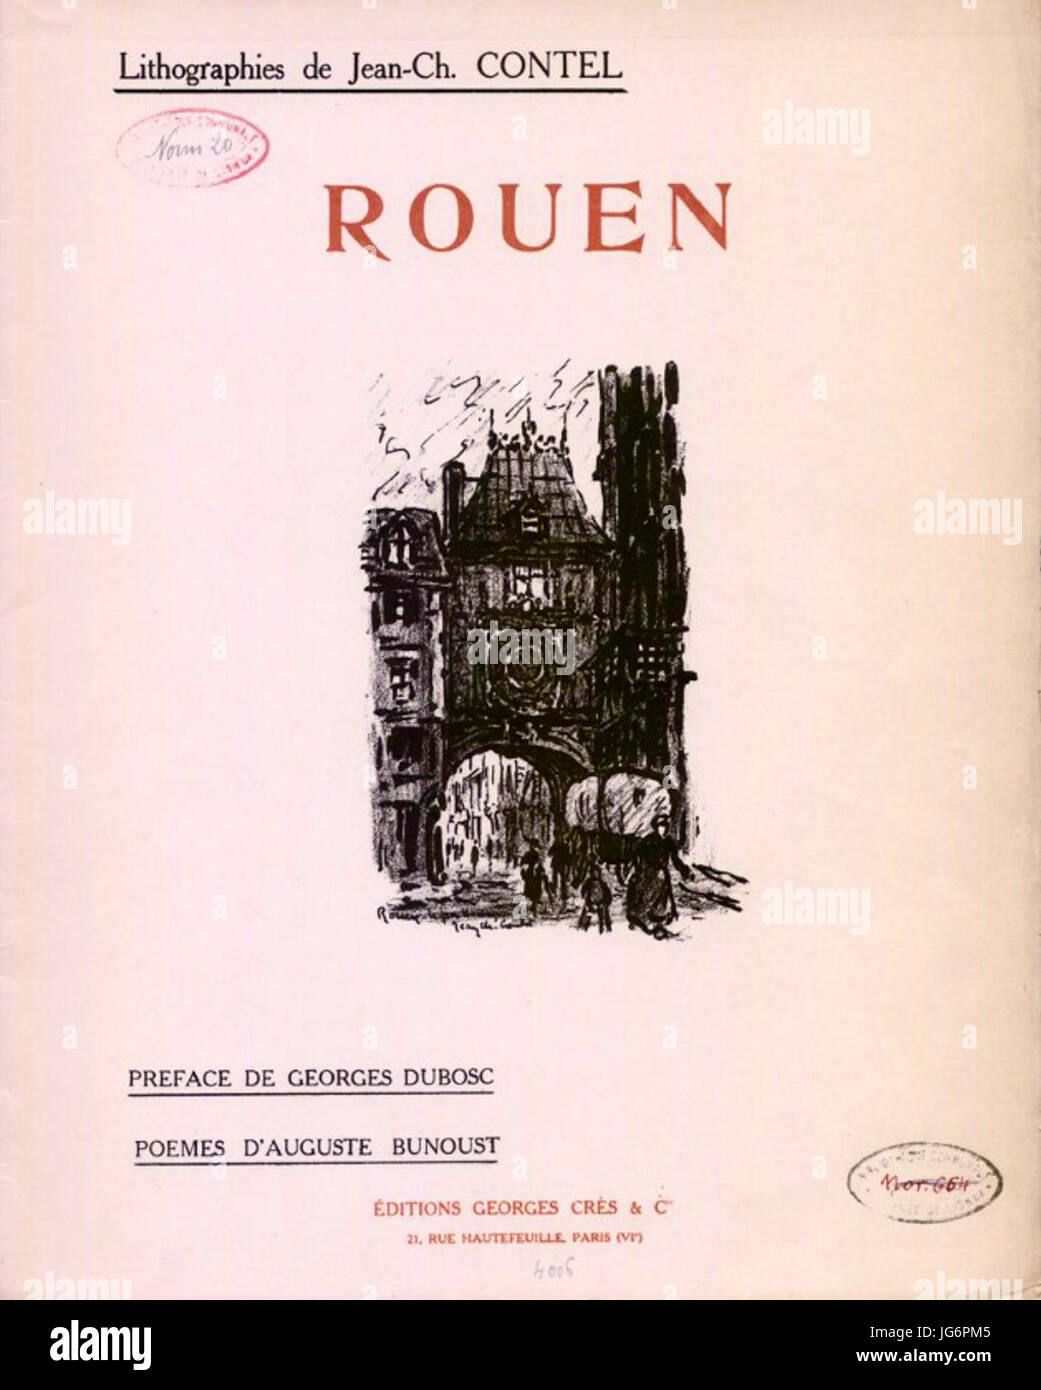 Rouen, lithographies de Jean-Charles Contel, poèmes d'Auguste Bunoust, 1920 Stock Photo